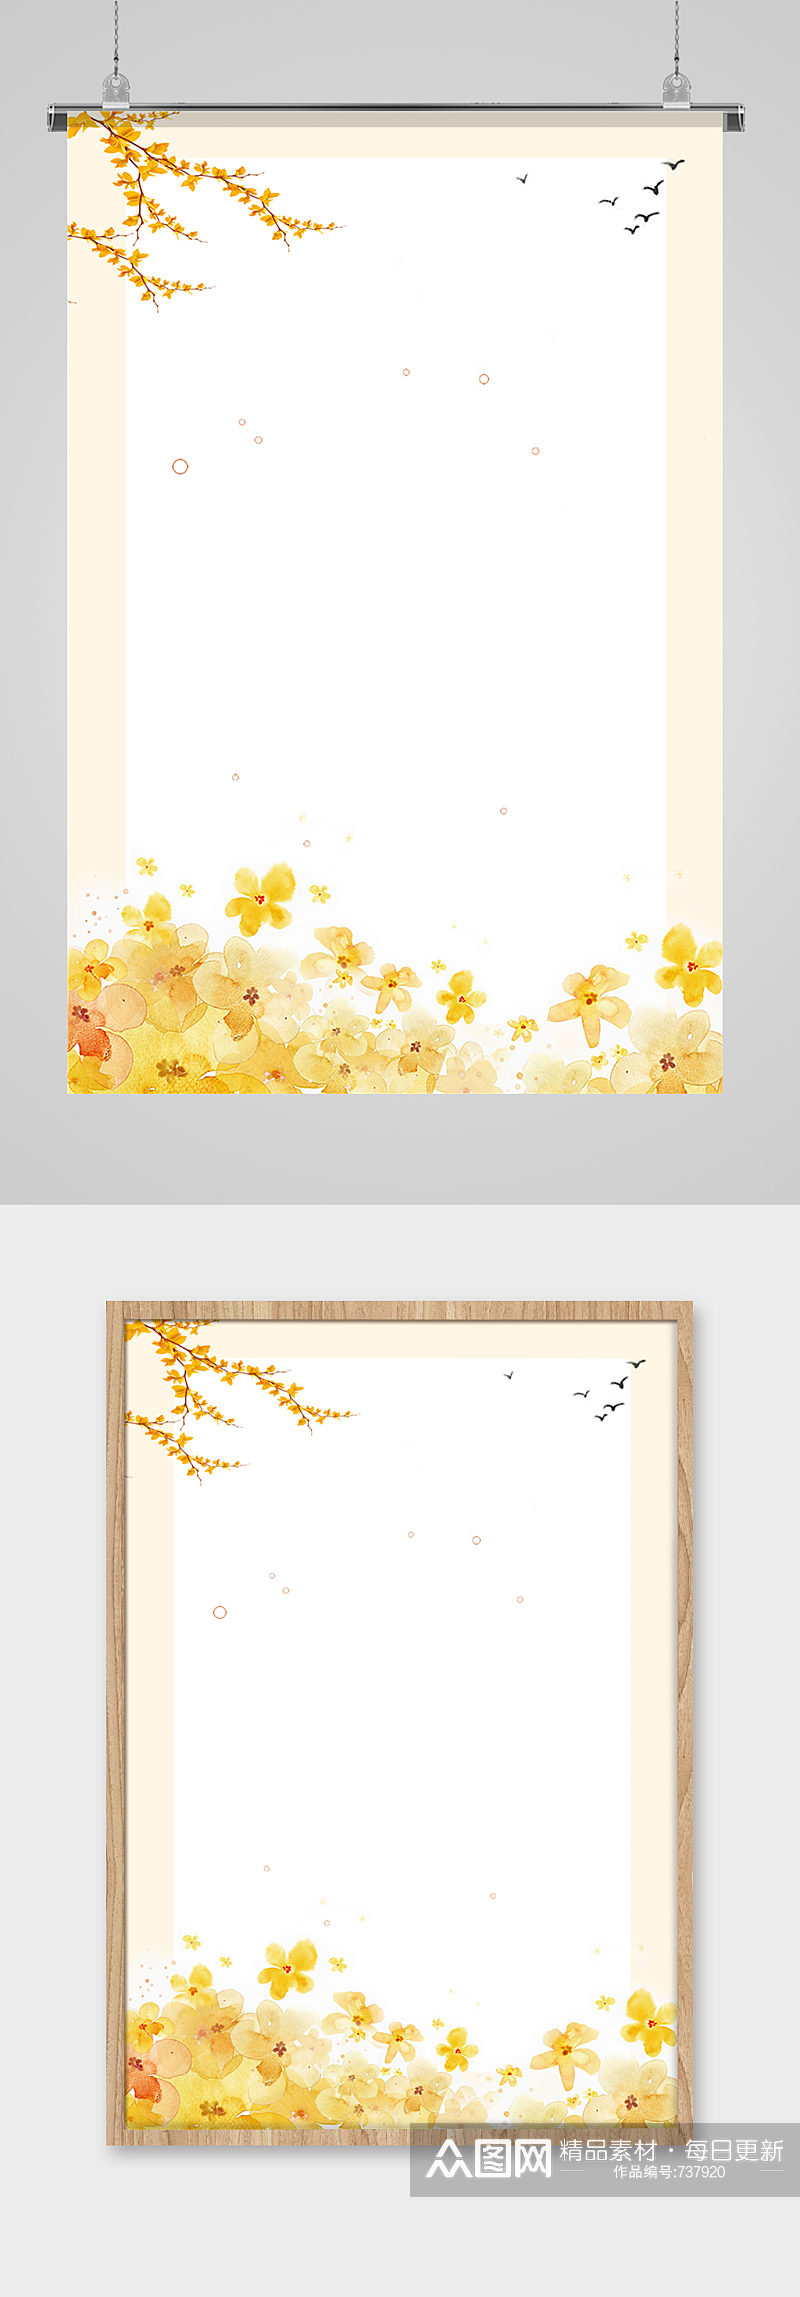 秋季鲜花风景海报背景插画背景素材